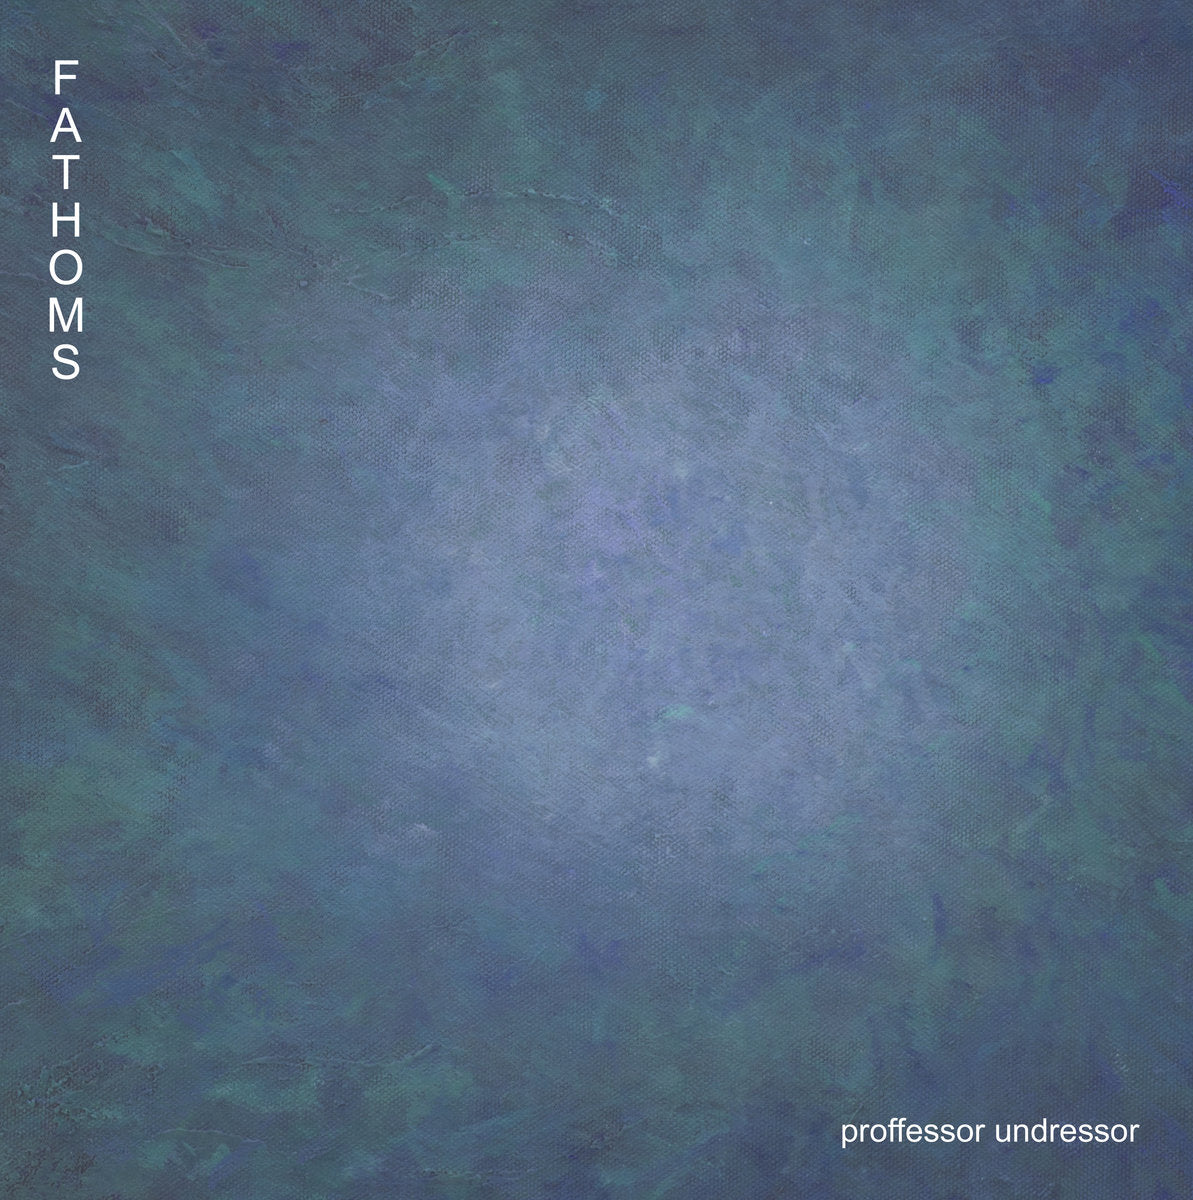 Proffessor Undressor/Fathoms (Ascent Blue) [LP]